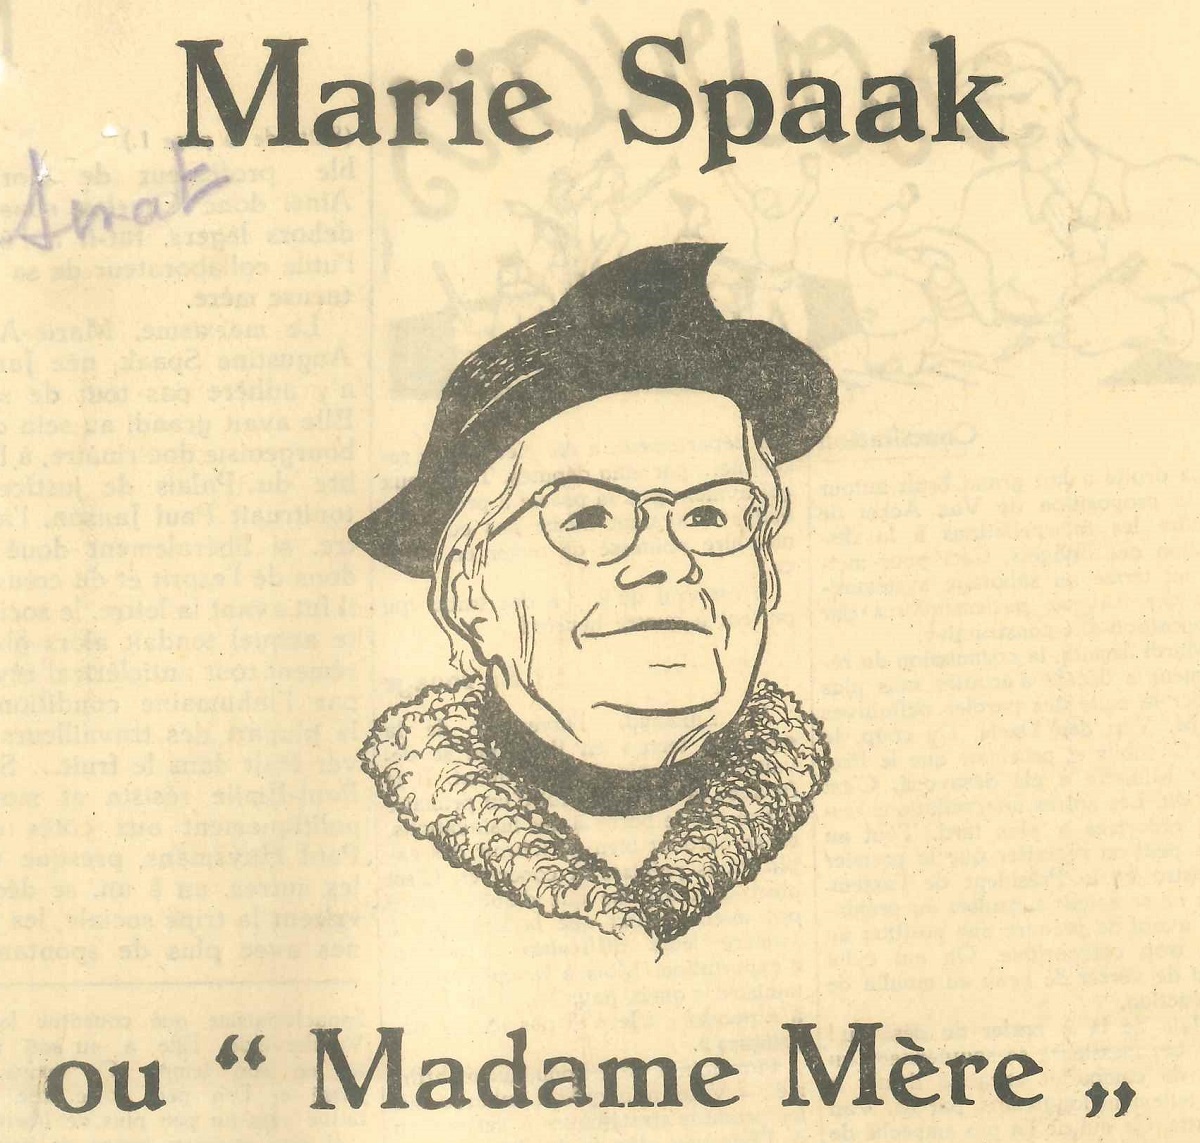 'Madame Mère' - Uittreksel uit een satirisch krantenartikel